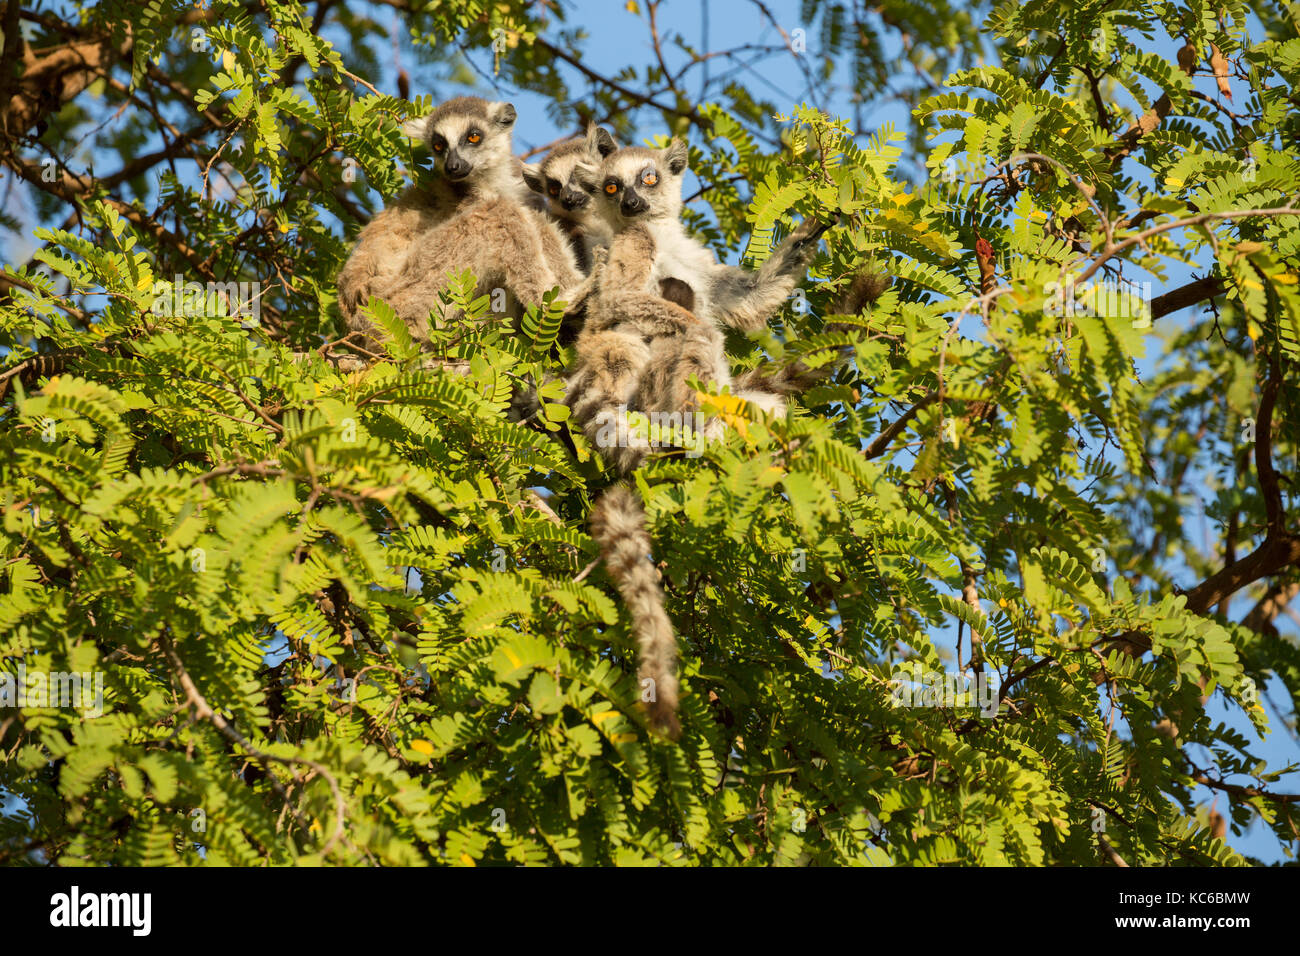 África, madgascar, reserva berenty, wild lémures de cola anillada (Lemur catta) en peligro de extinción, sentado en el árbol. Foto de stock